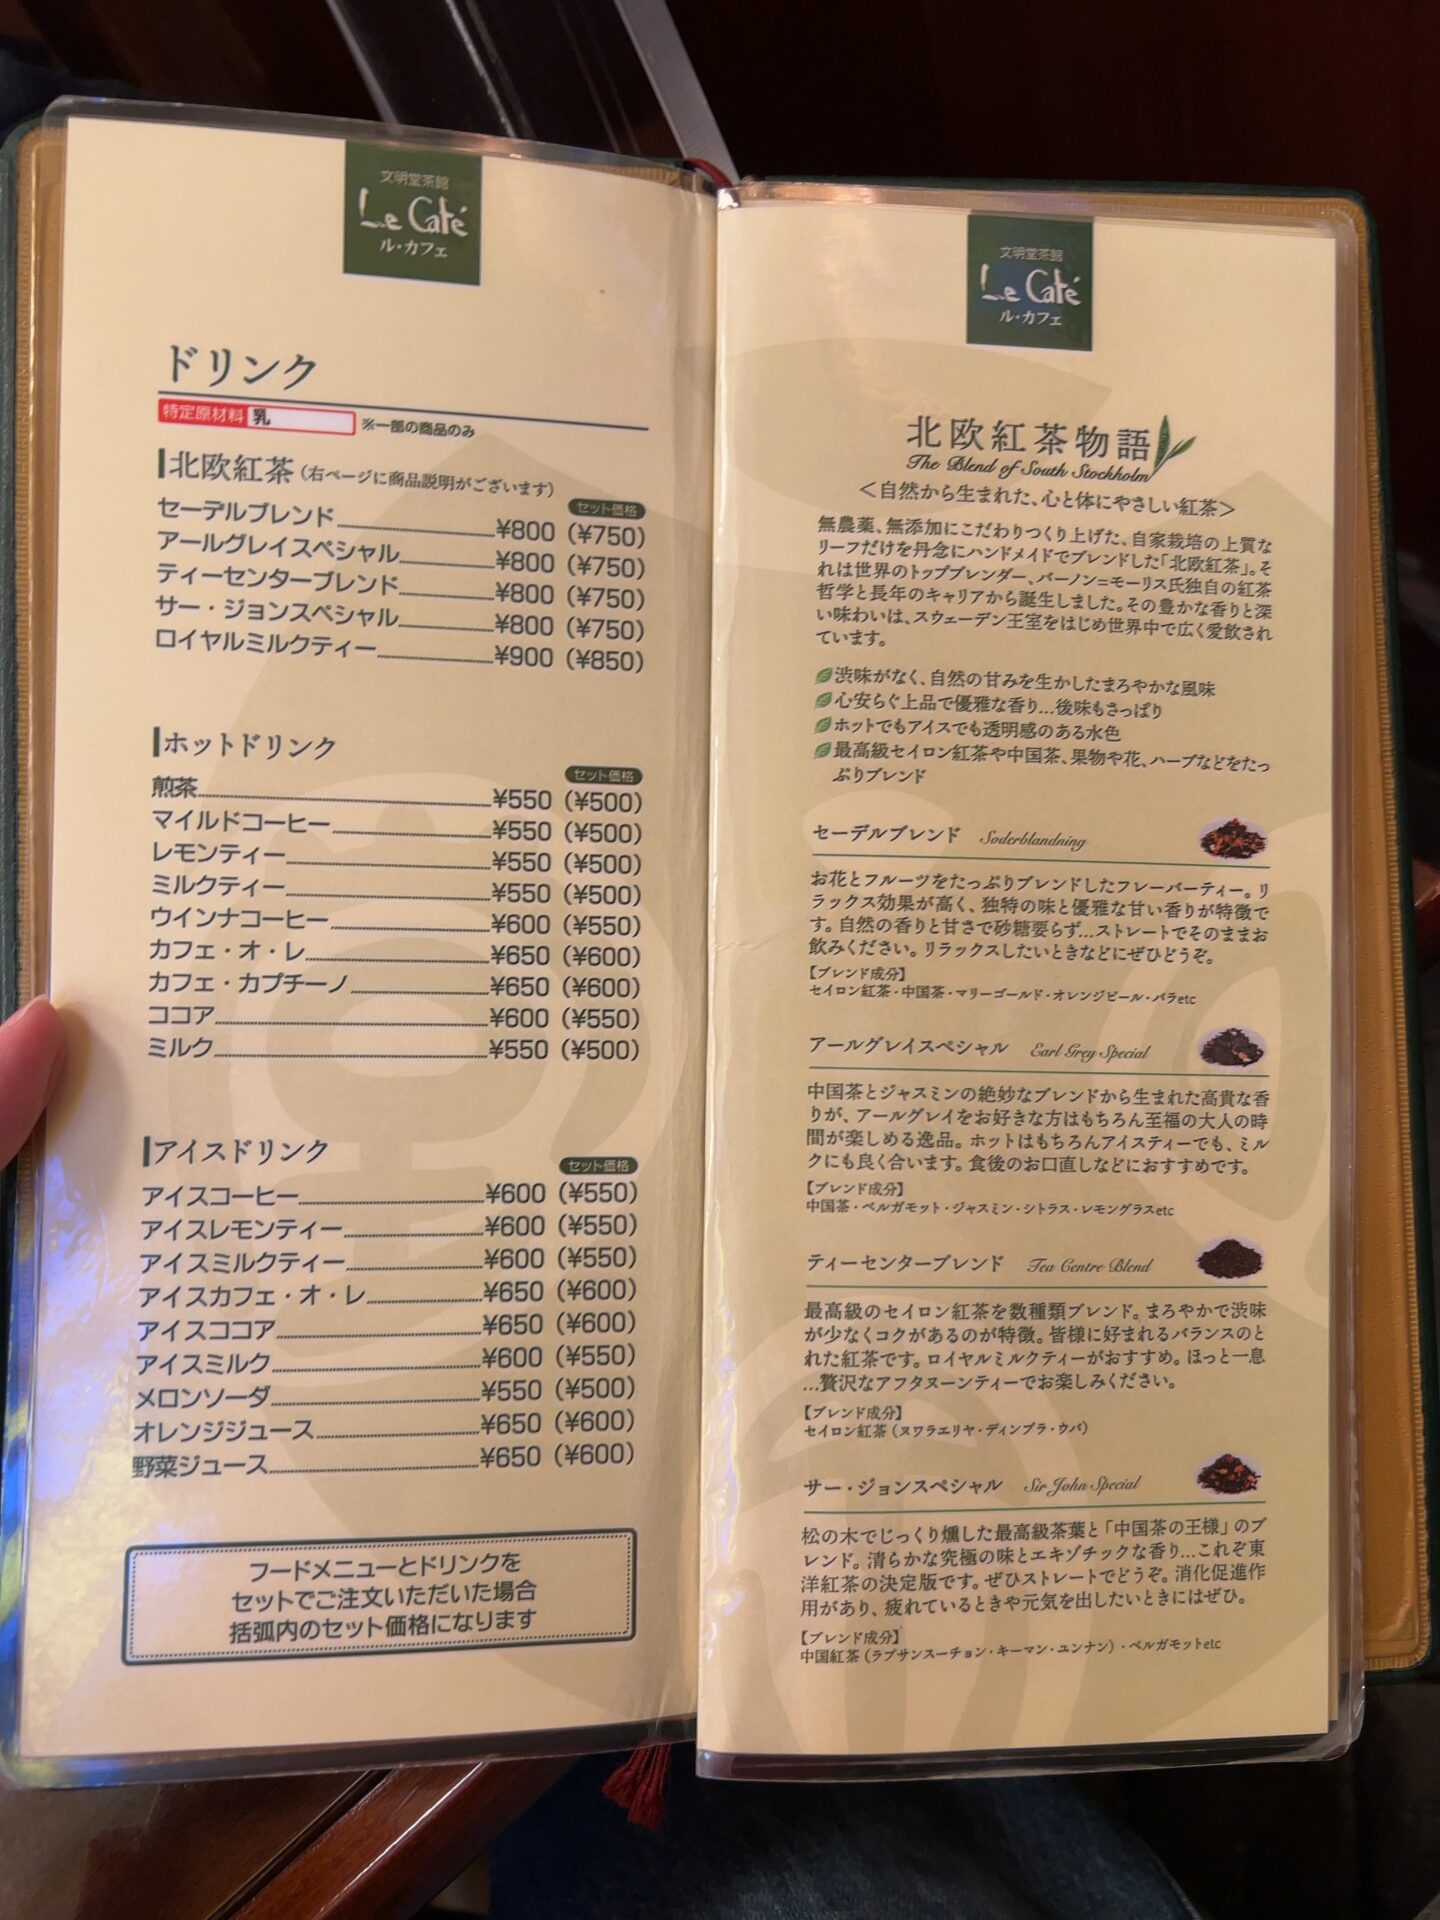 文明堂茶館 Le Cafe メニュー